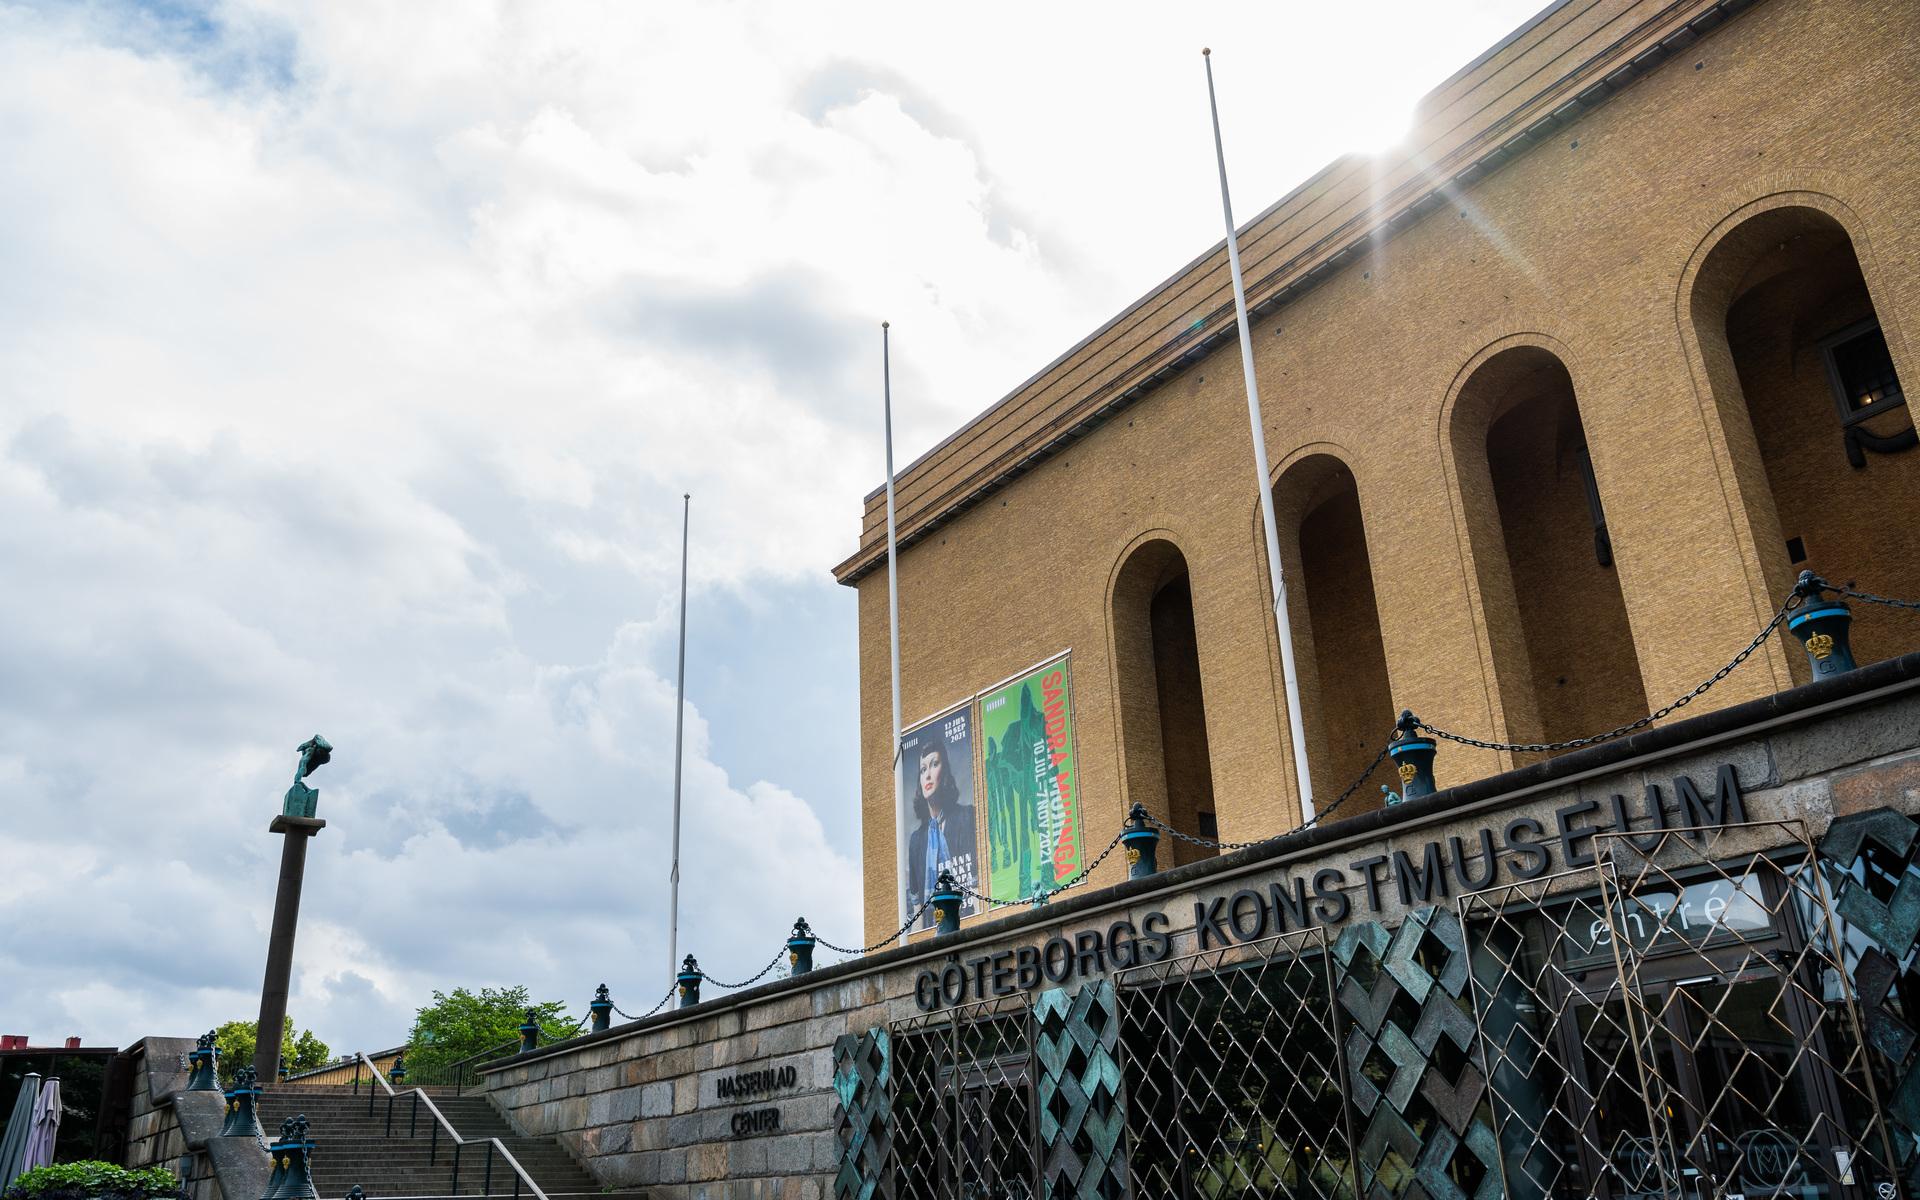 Om rödgrönrosa får som de vill slopas entréavgifter till Göteborgs museum, däribland Göteborgs konstmuseum. Konstmuseet står därtill inför en planerad renovering som räknas kosta 800 miljoner. 